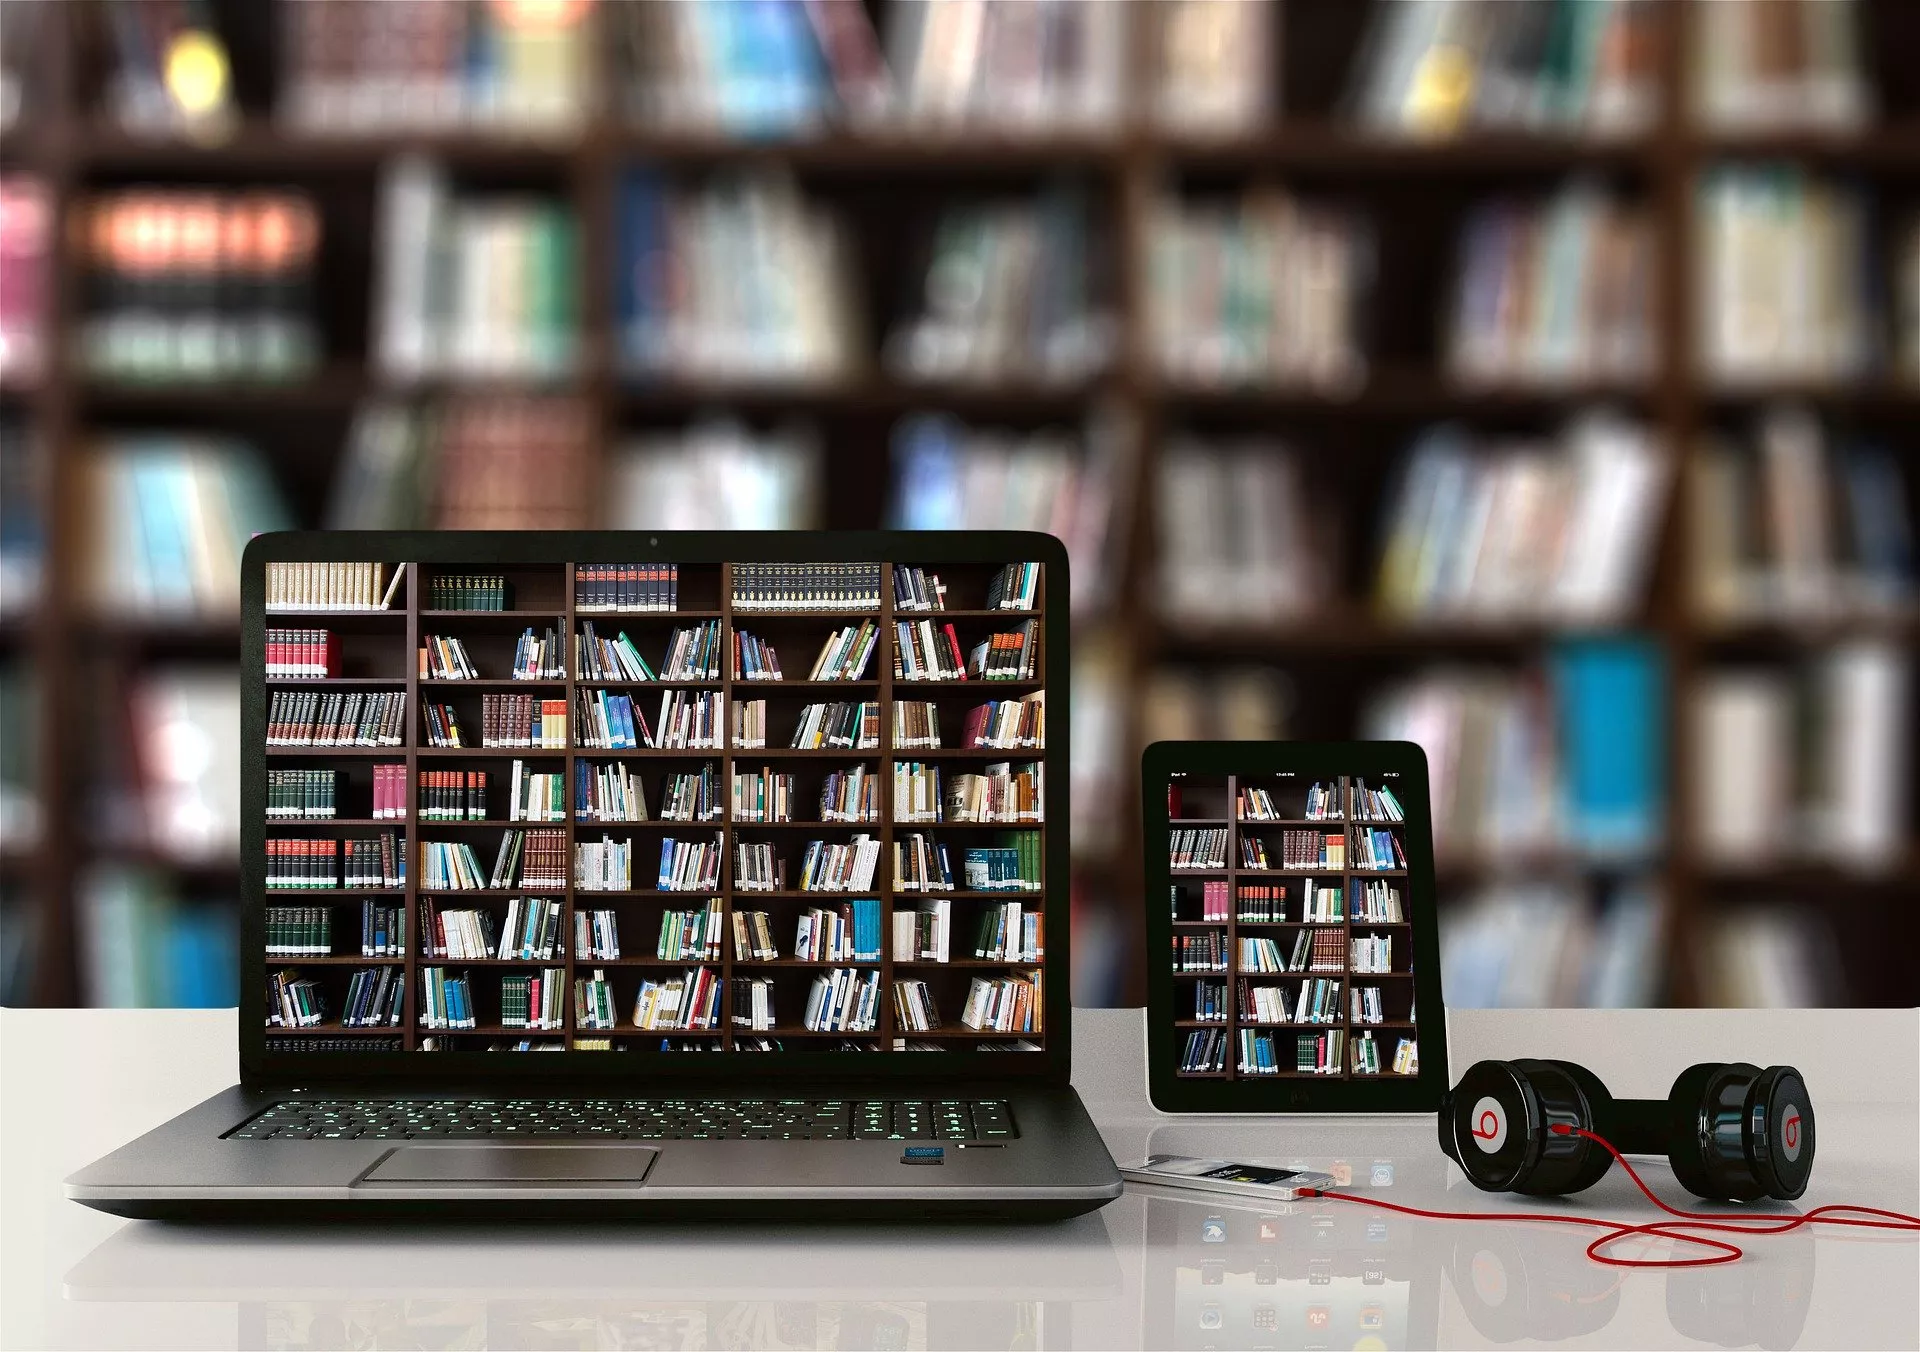 Bibliothek - analog und digital.